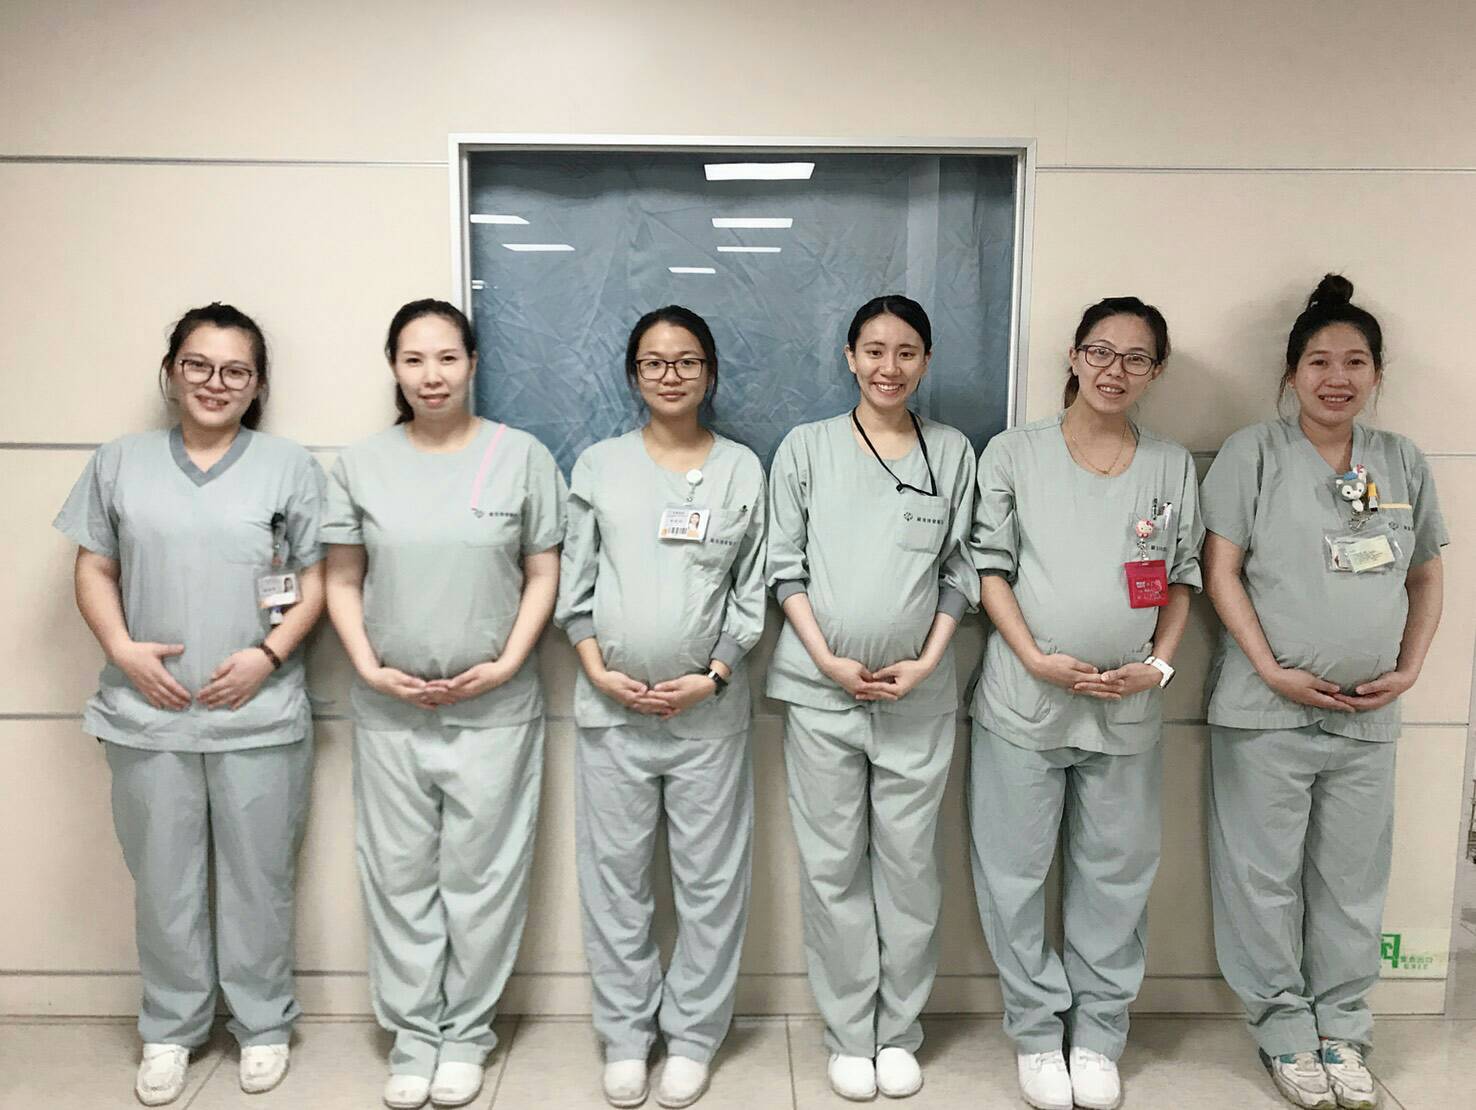 真是好「孕」氣 加護病房醫護喜迎12新生兒